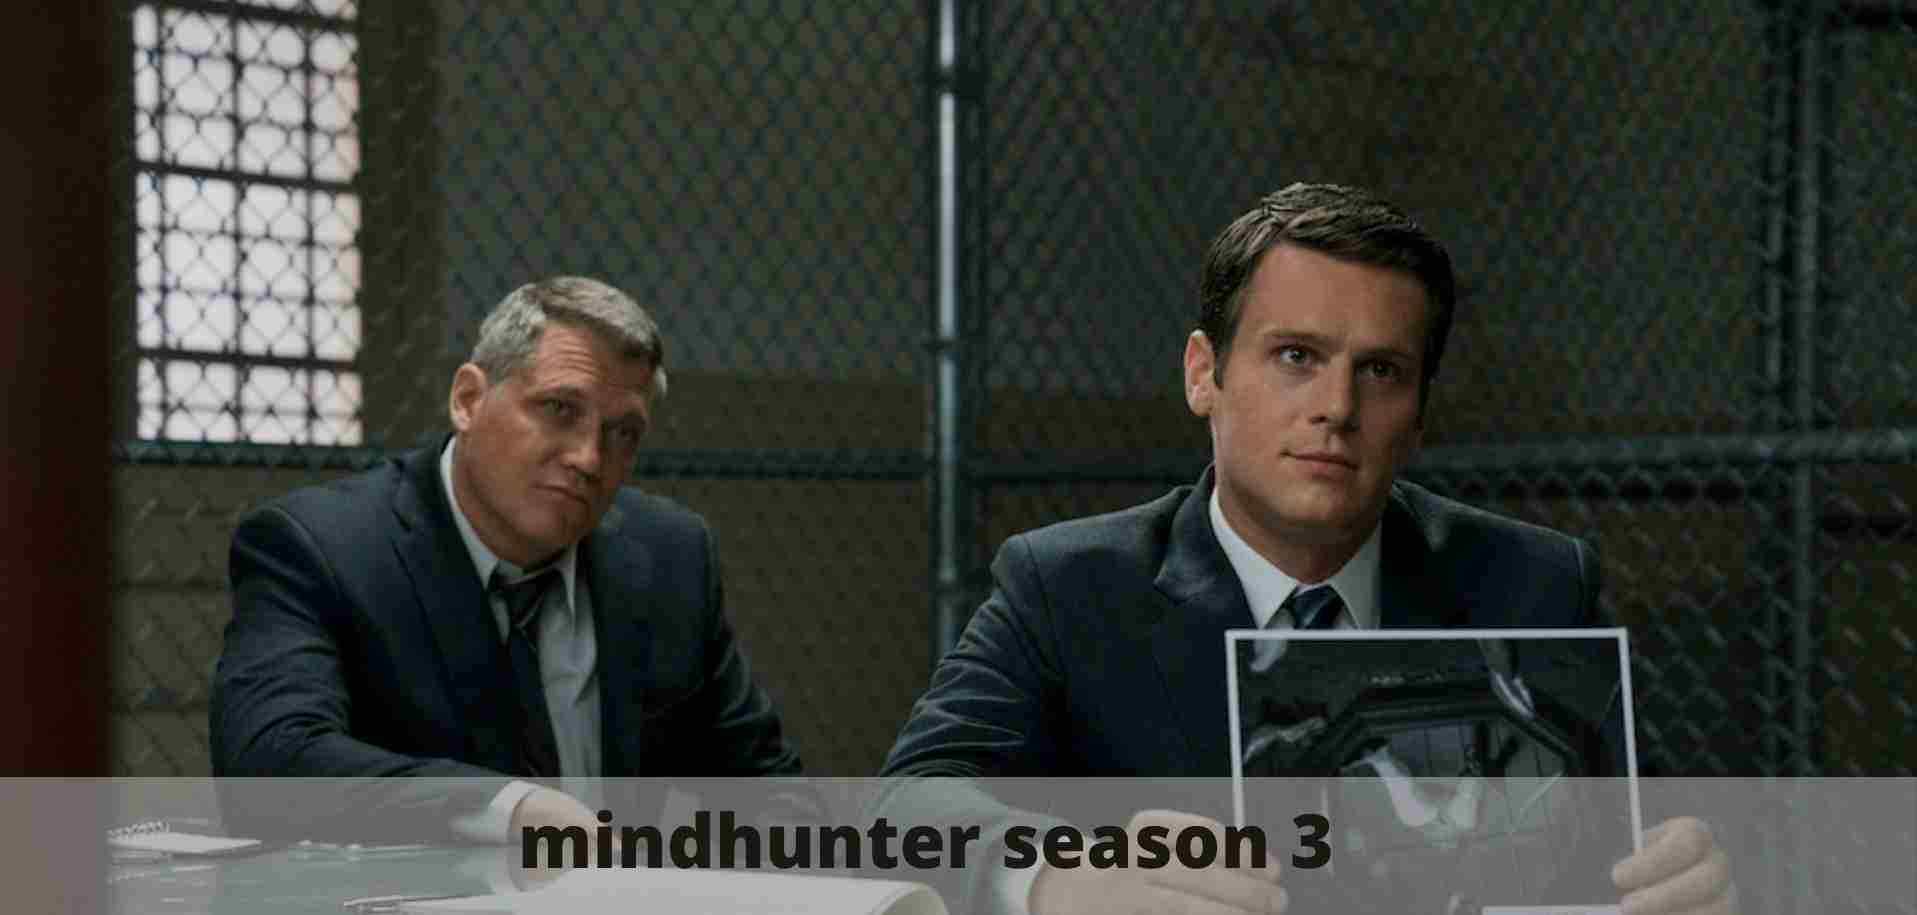 mindhunter season 3